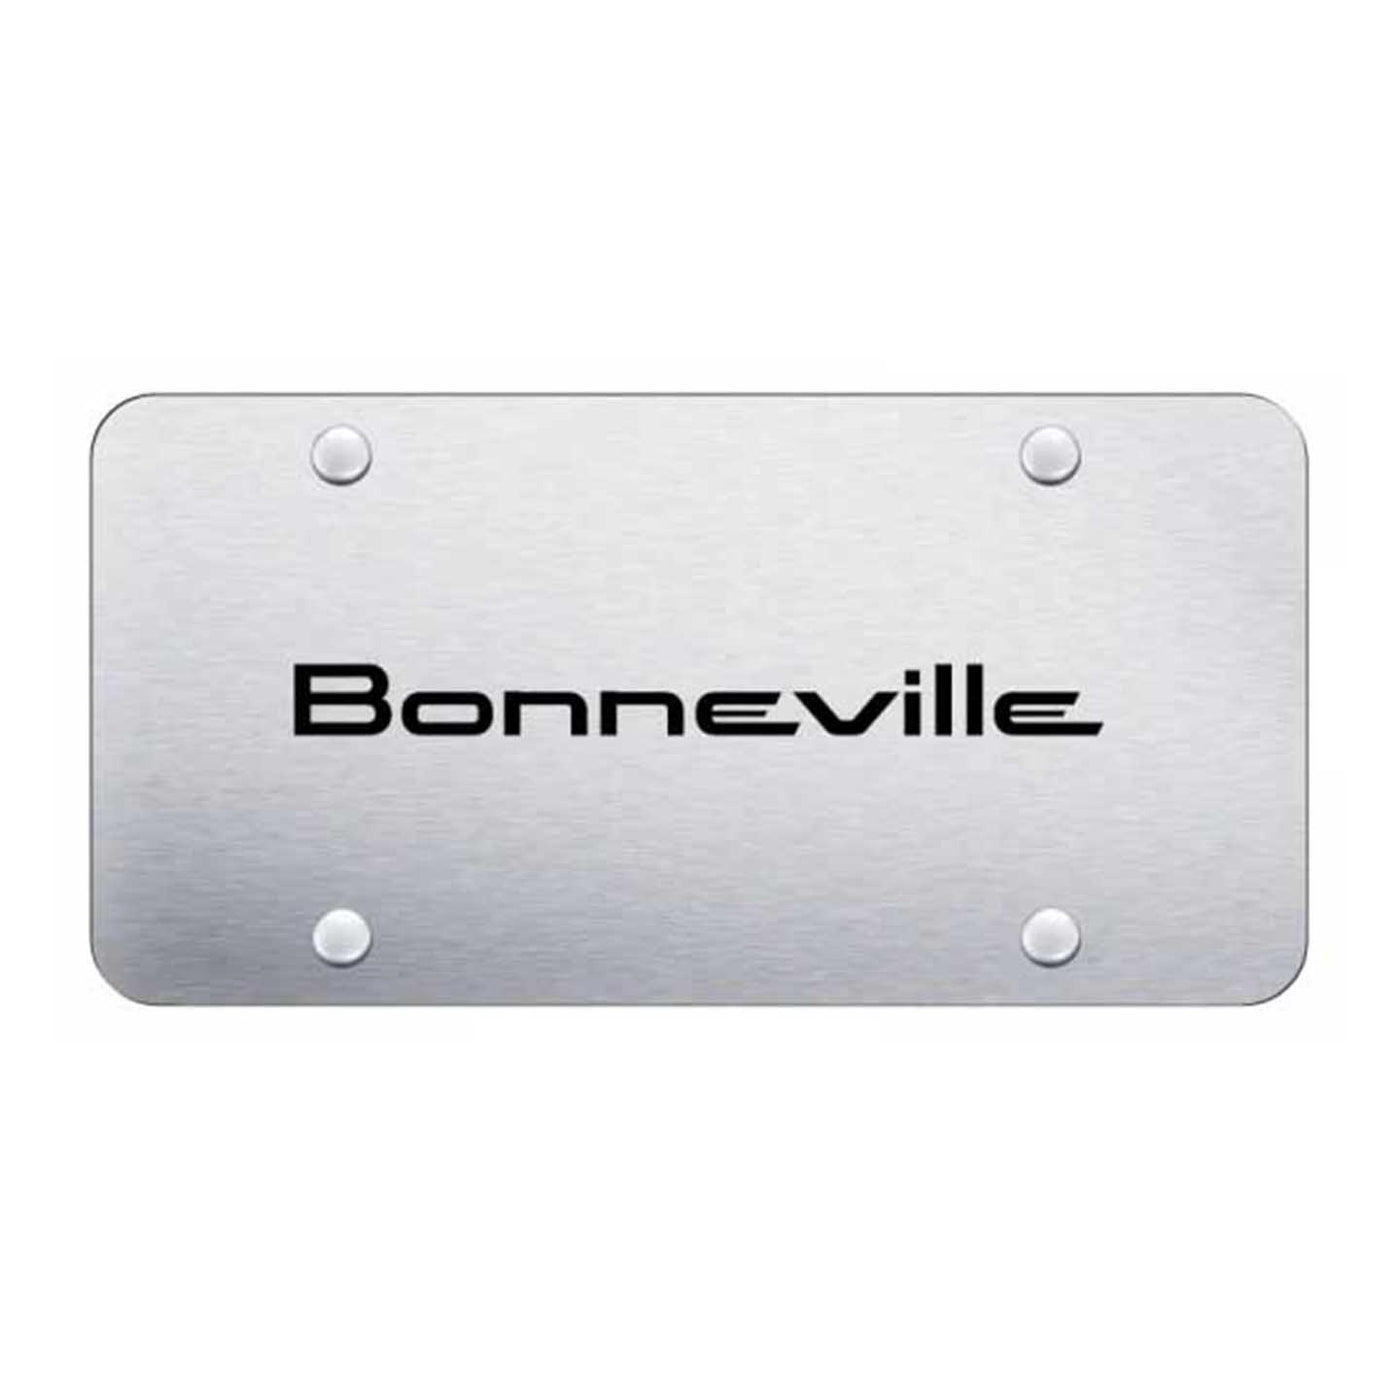 Bonneville License Plate - Laser Etched Brushed